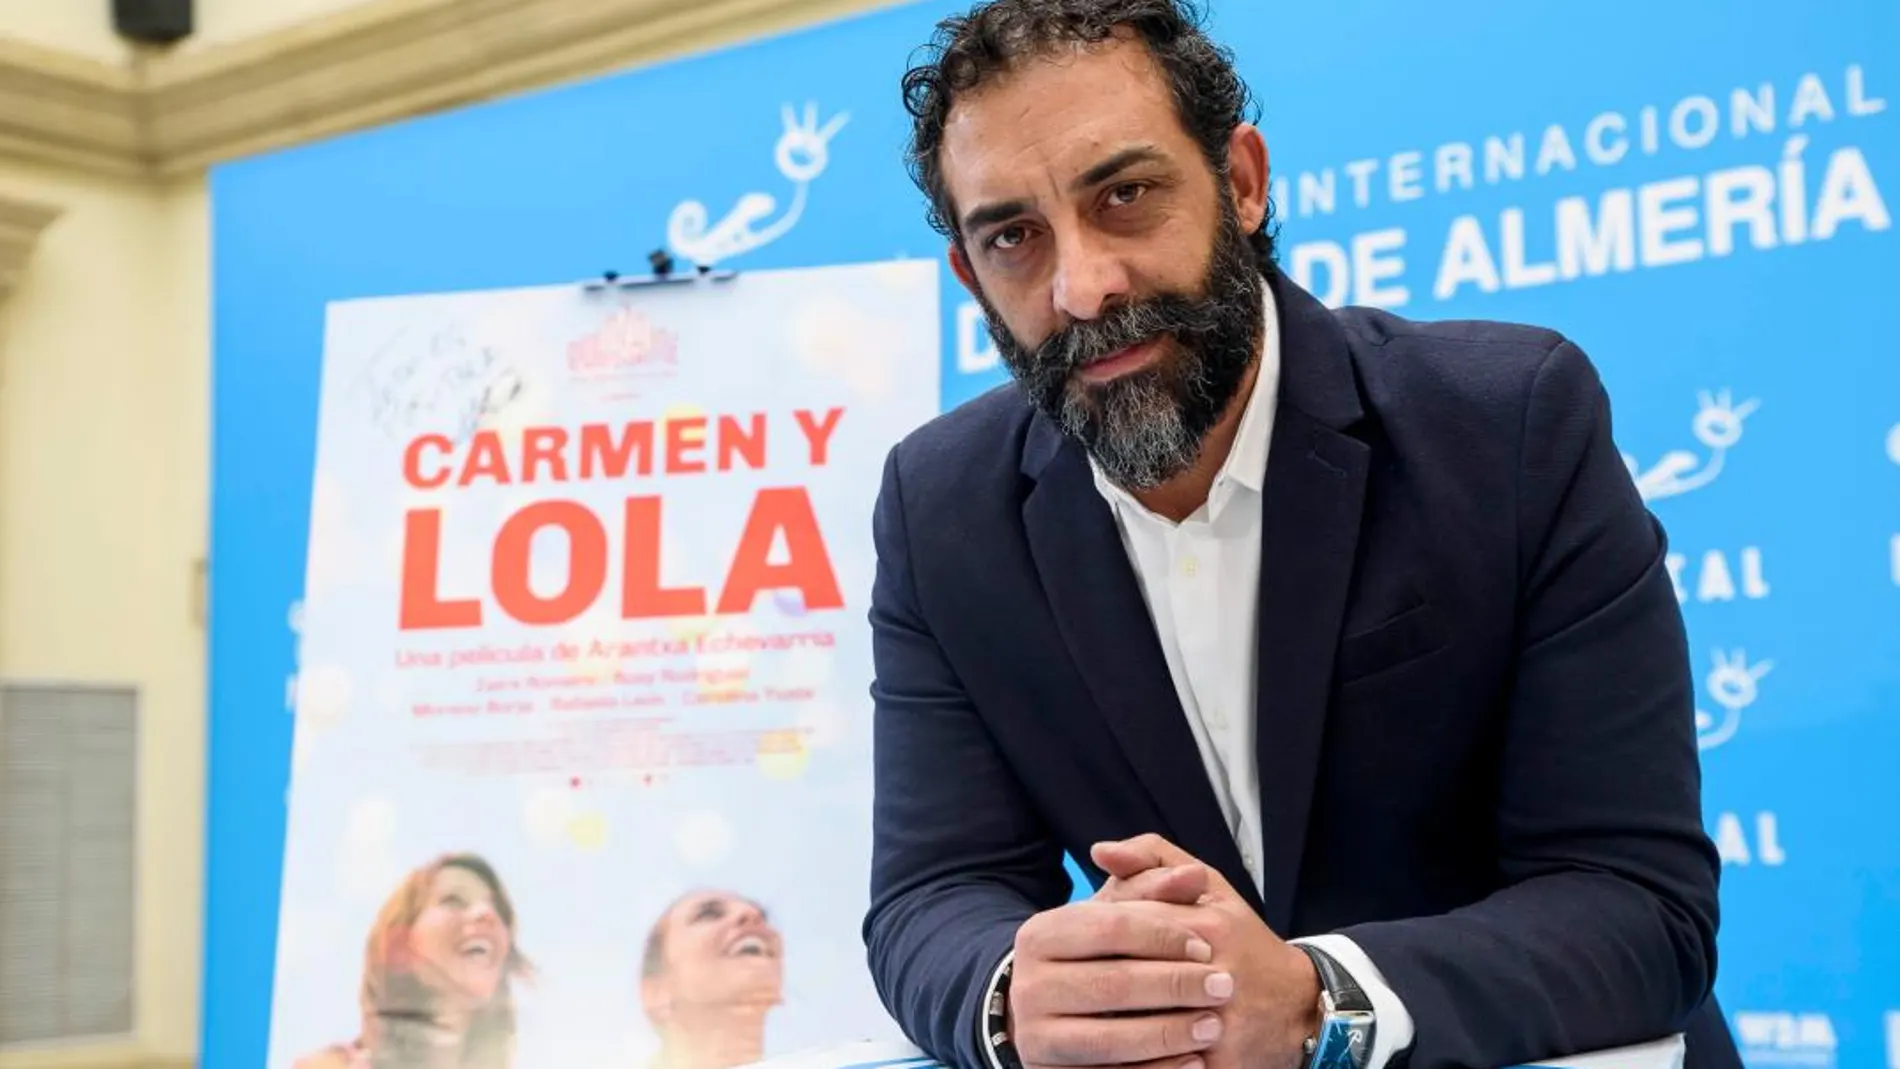 El actor Moreno Borja, protagonista de “Carmen y Lola” / Foto: La Razón